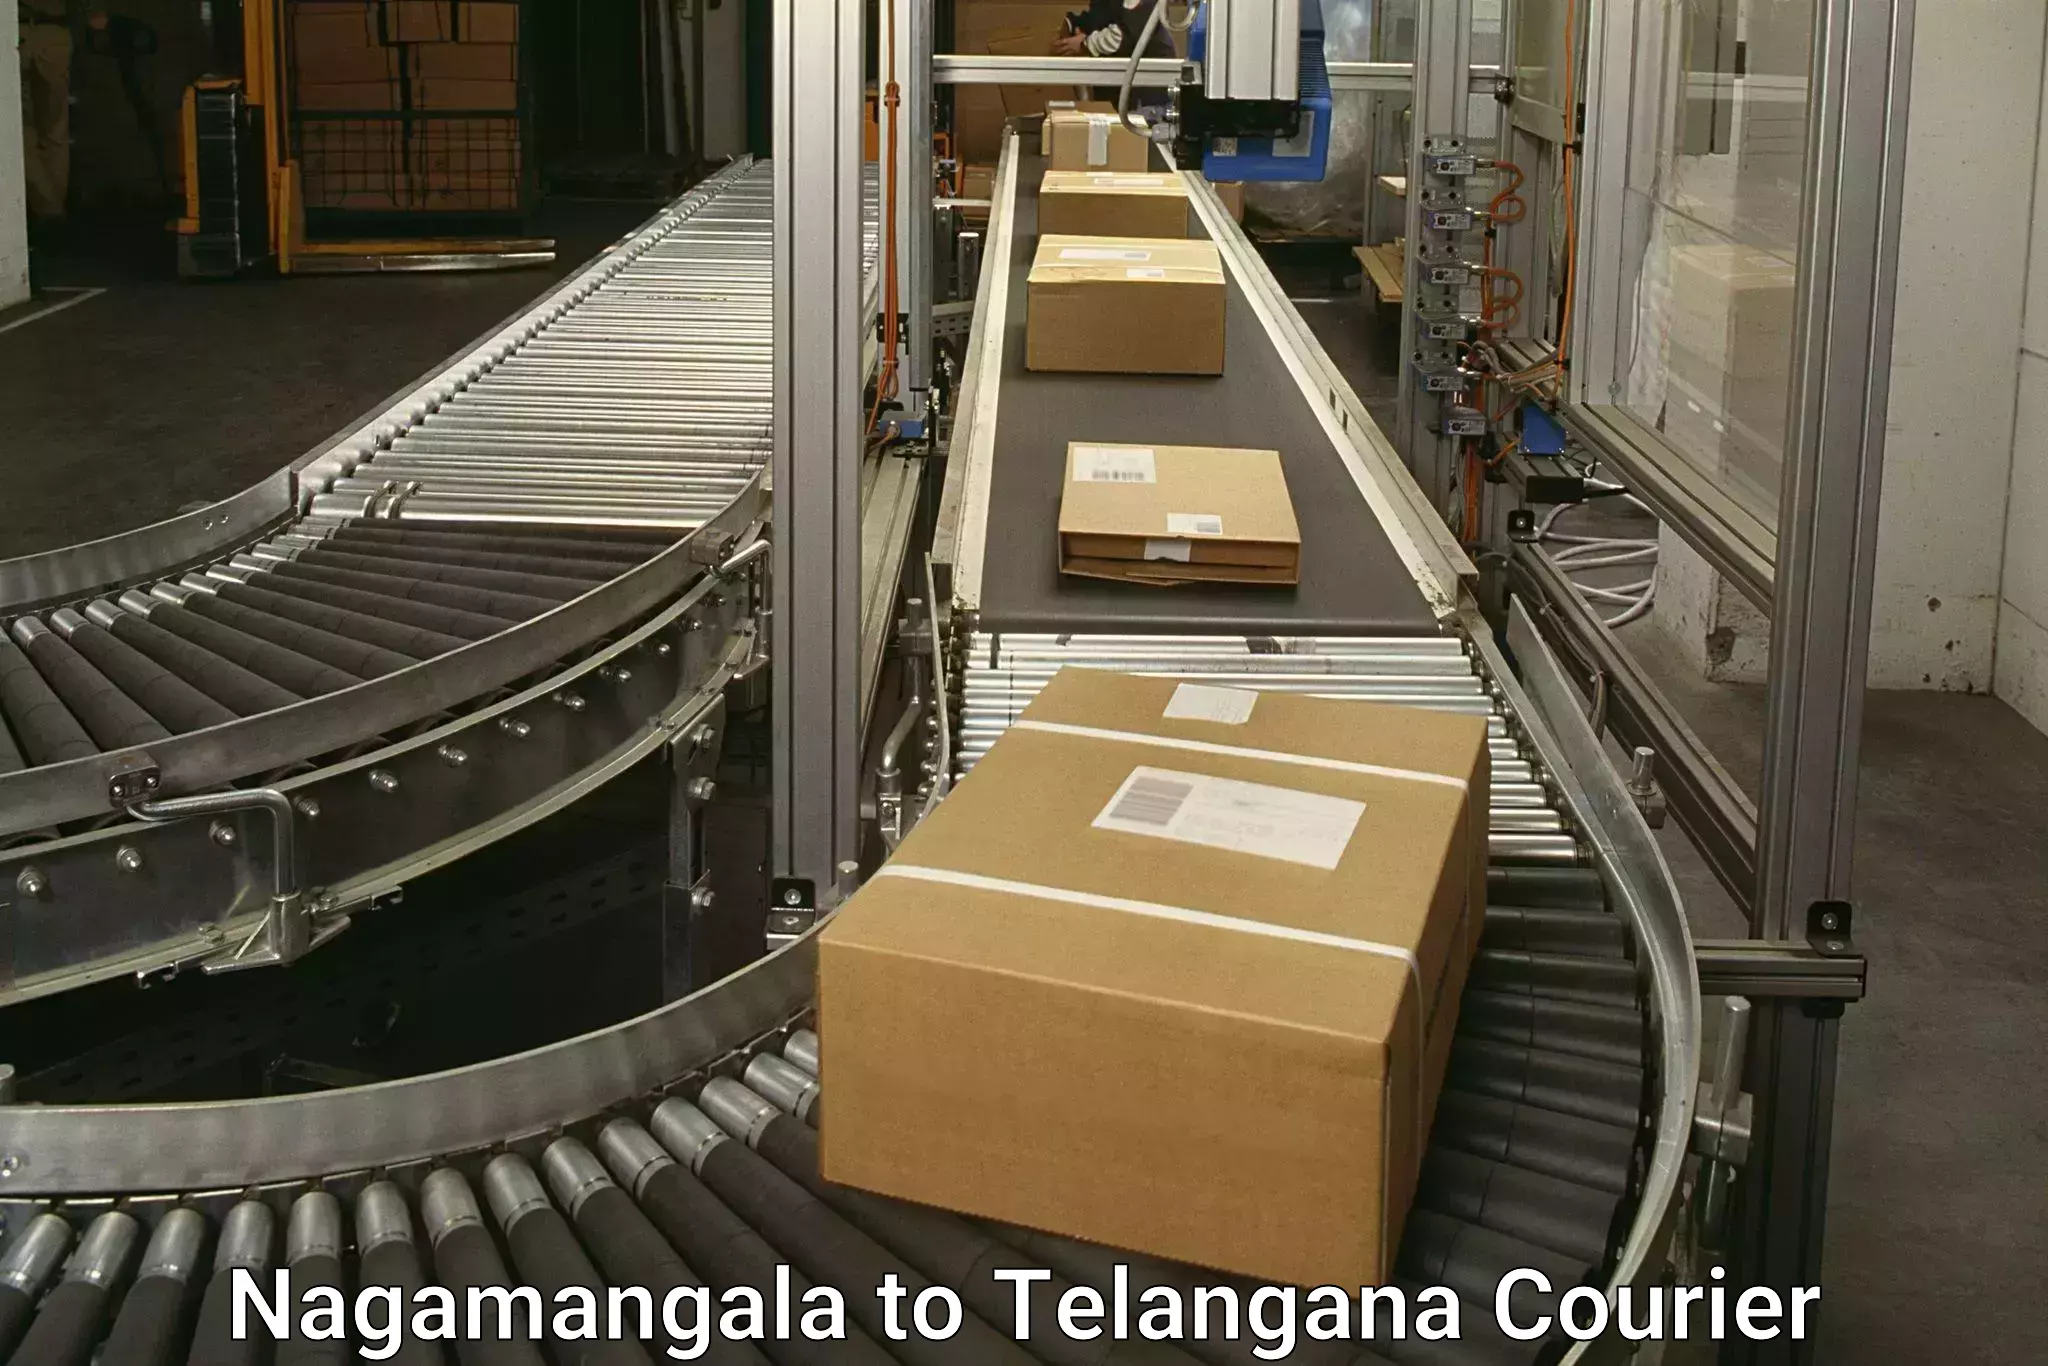 Digital courier platforms Nagamangala to Narsampet